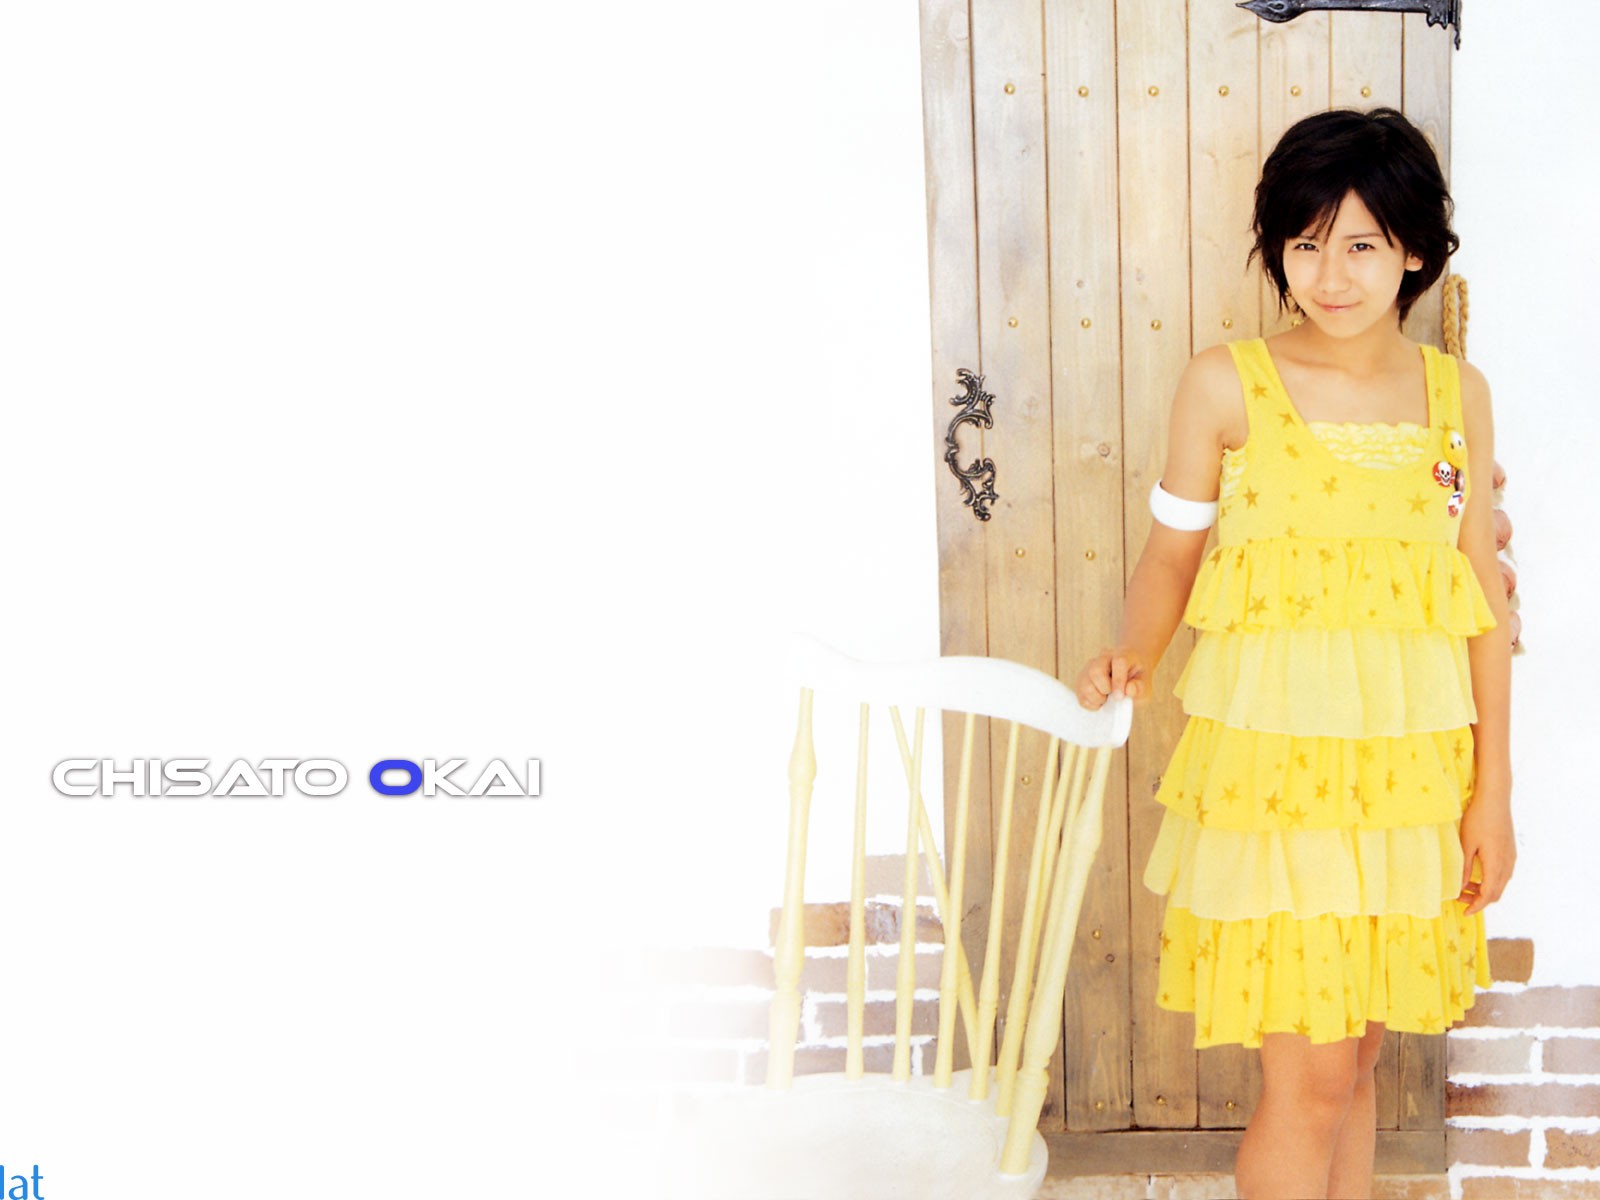 Cute belleza japonesa portafolio de fotos #6 - 1600x1200